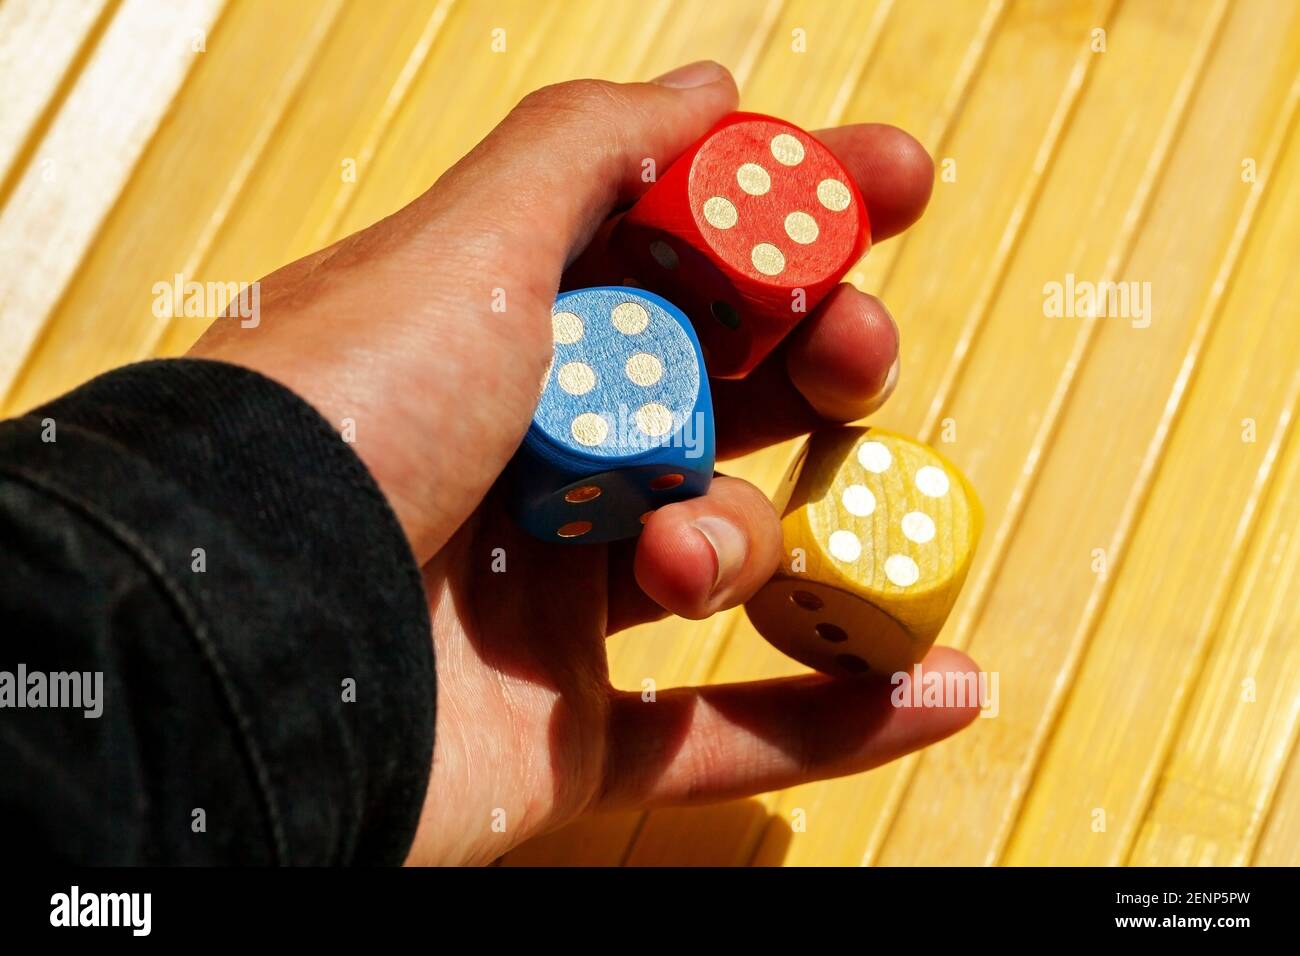 Lucky Spieler Hand hält drei bunte glänzende Spielwürfel mit der Nummer sechs. Mehrere Würfel zeigen 6, Glück im Glücksspiel, Betrug, Dodger, ass die sle Stockfoto